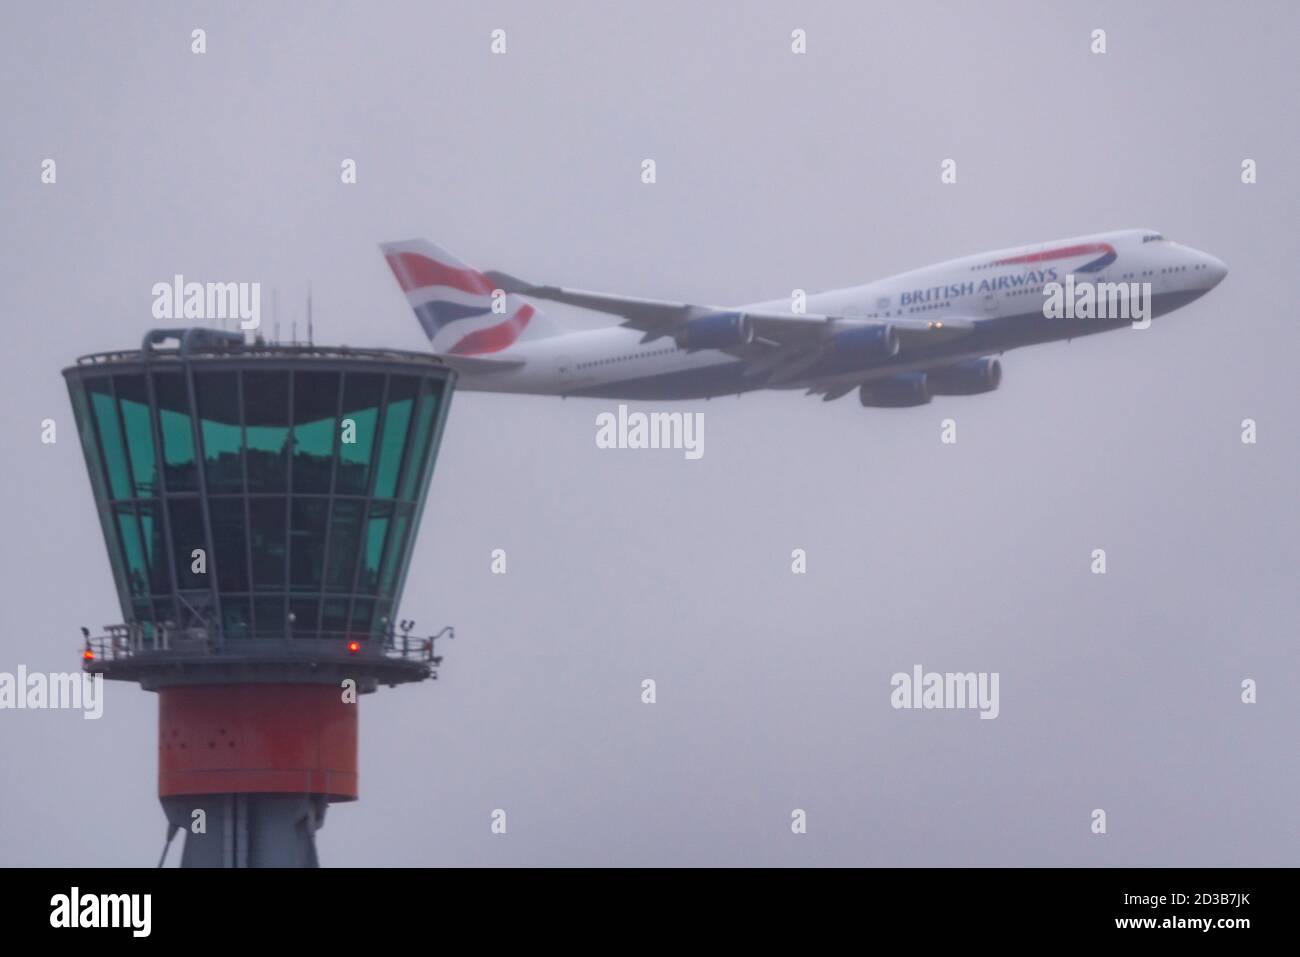 Aeroporto Heathrow di Londra, Londra, Regno Unito. 8 Ott 2020. British Airways ha avuto un paio di Boeing 747 Jumbo in pensione in deposito a Heathrow, a terra dopo il ritiro prematuro a causa dei danni COVID-19 per il settore dei viaggi. Registrazione G-CIVB è decollato per primo in cattive condizioni meteorologiche, ed è in uno speciale schema retrò per celebrare il centenario di BA nel 2019. Ha volato 59 milioni di miglia e sarà salvato come pezzo da museo all'aeroporto di Cotswold. G-CIVY ha seguito ed è in livrea BA standard, girando e facendo un 'approccio sissed' indietro sopra l'aeroporto che passa la torre, prima che si è diretto via probabile per rottami Foto Stock